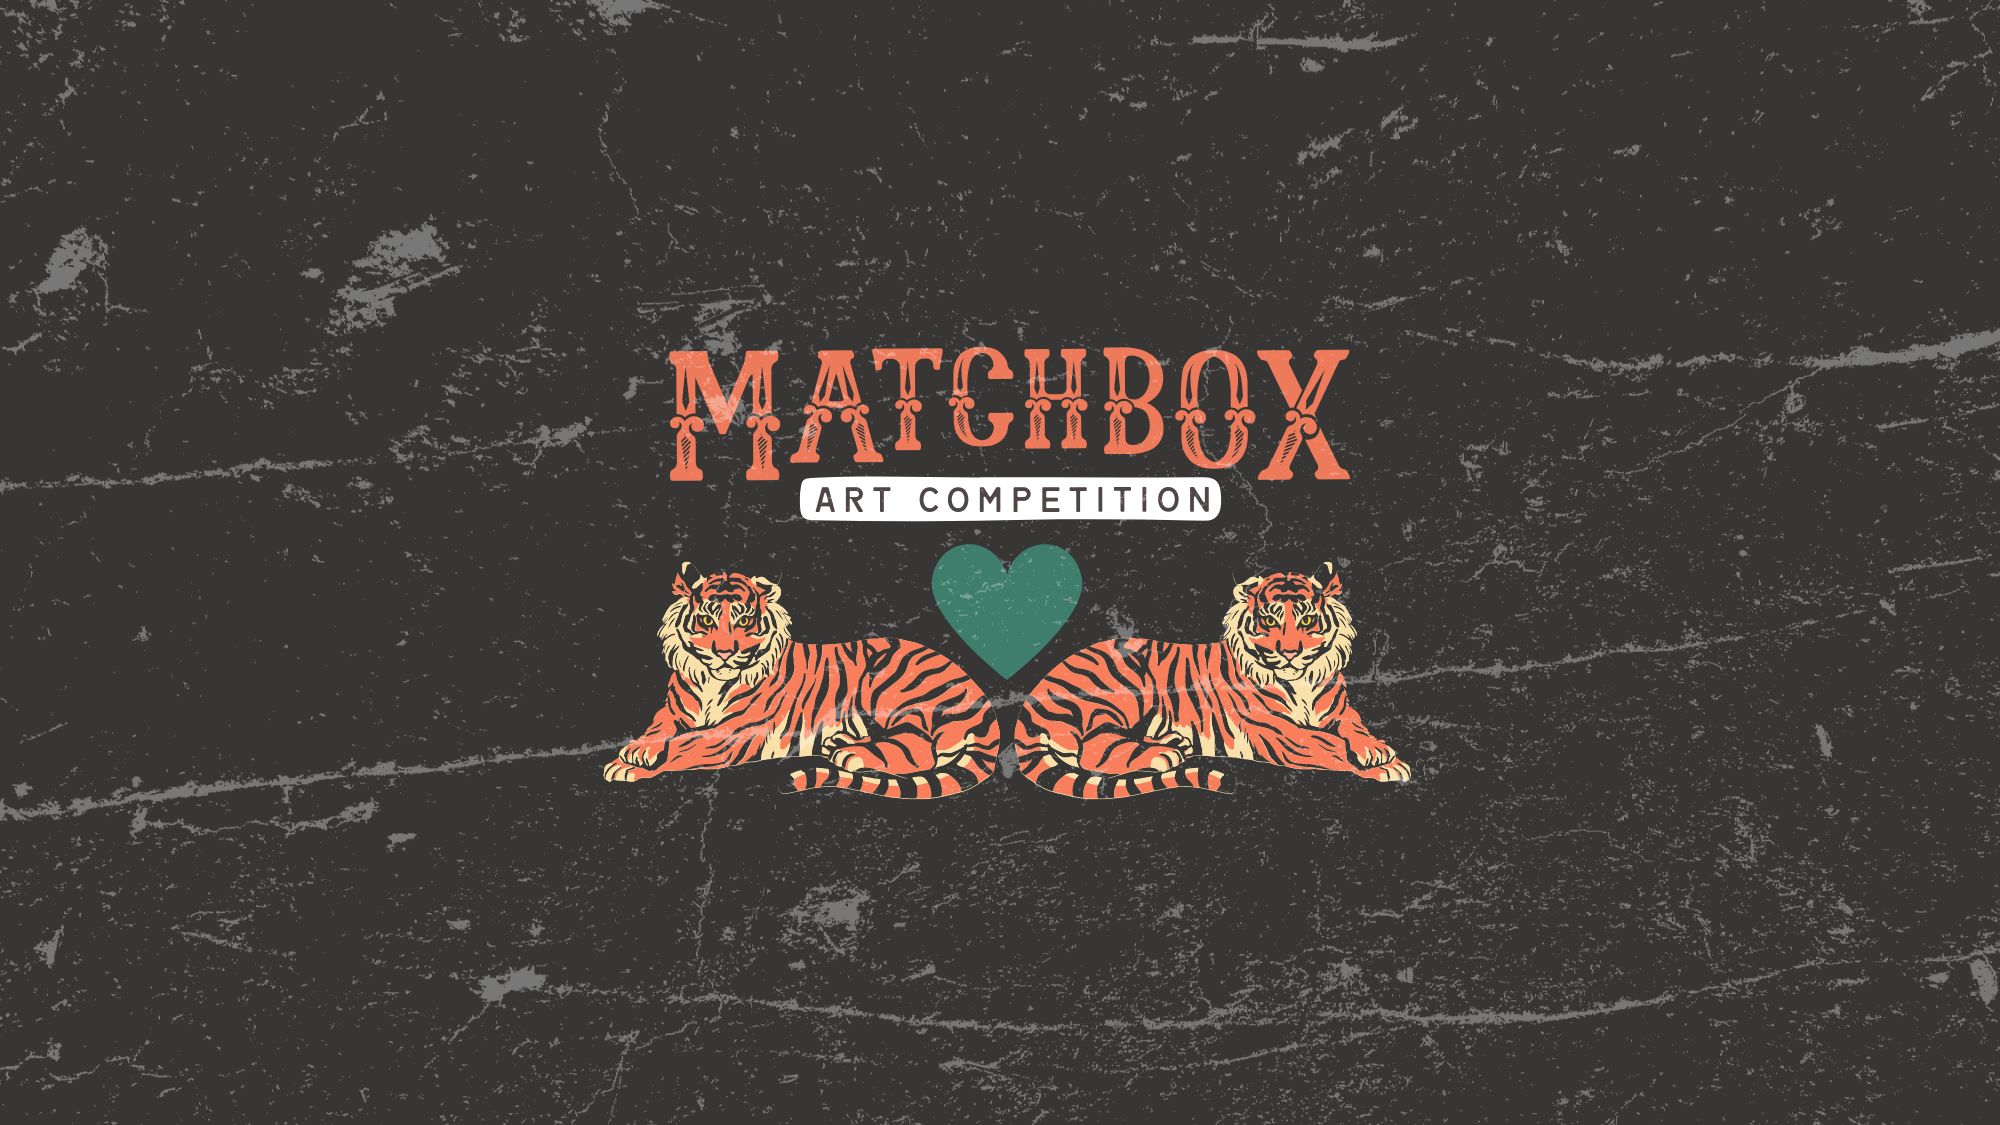 Matchbox art competition banner